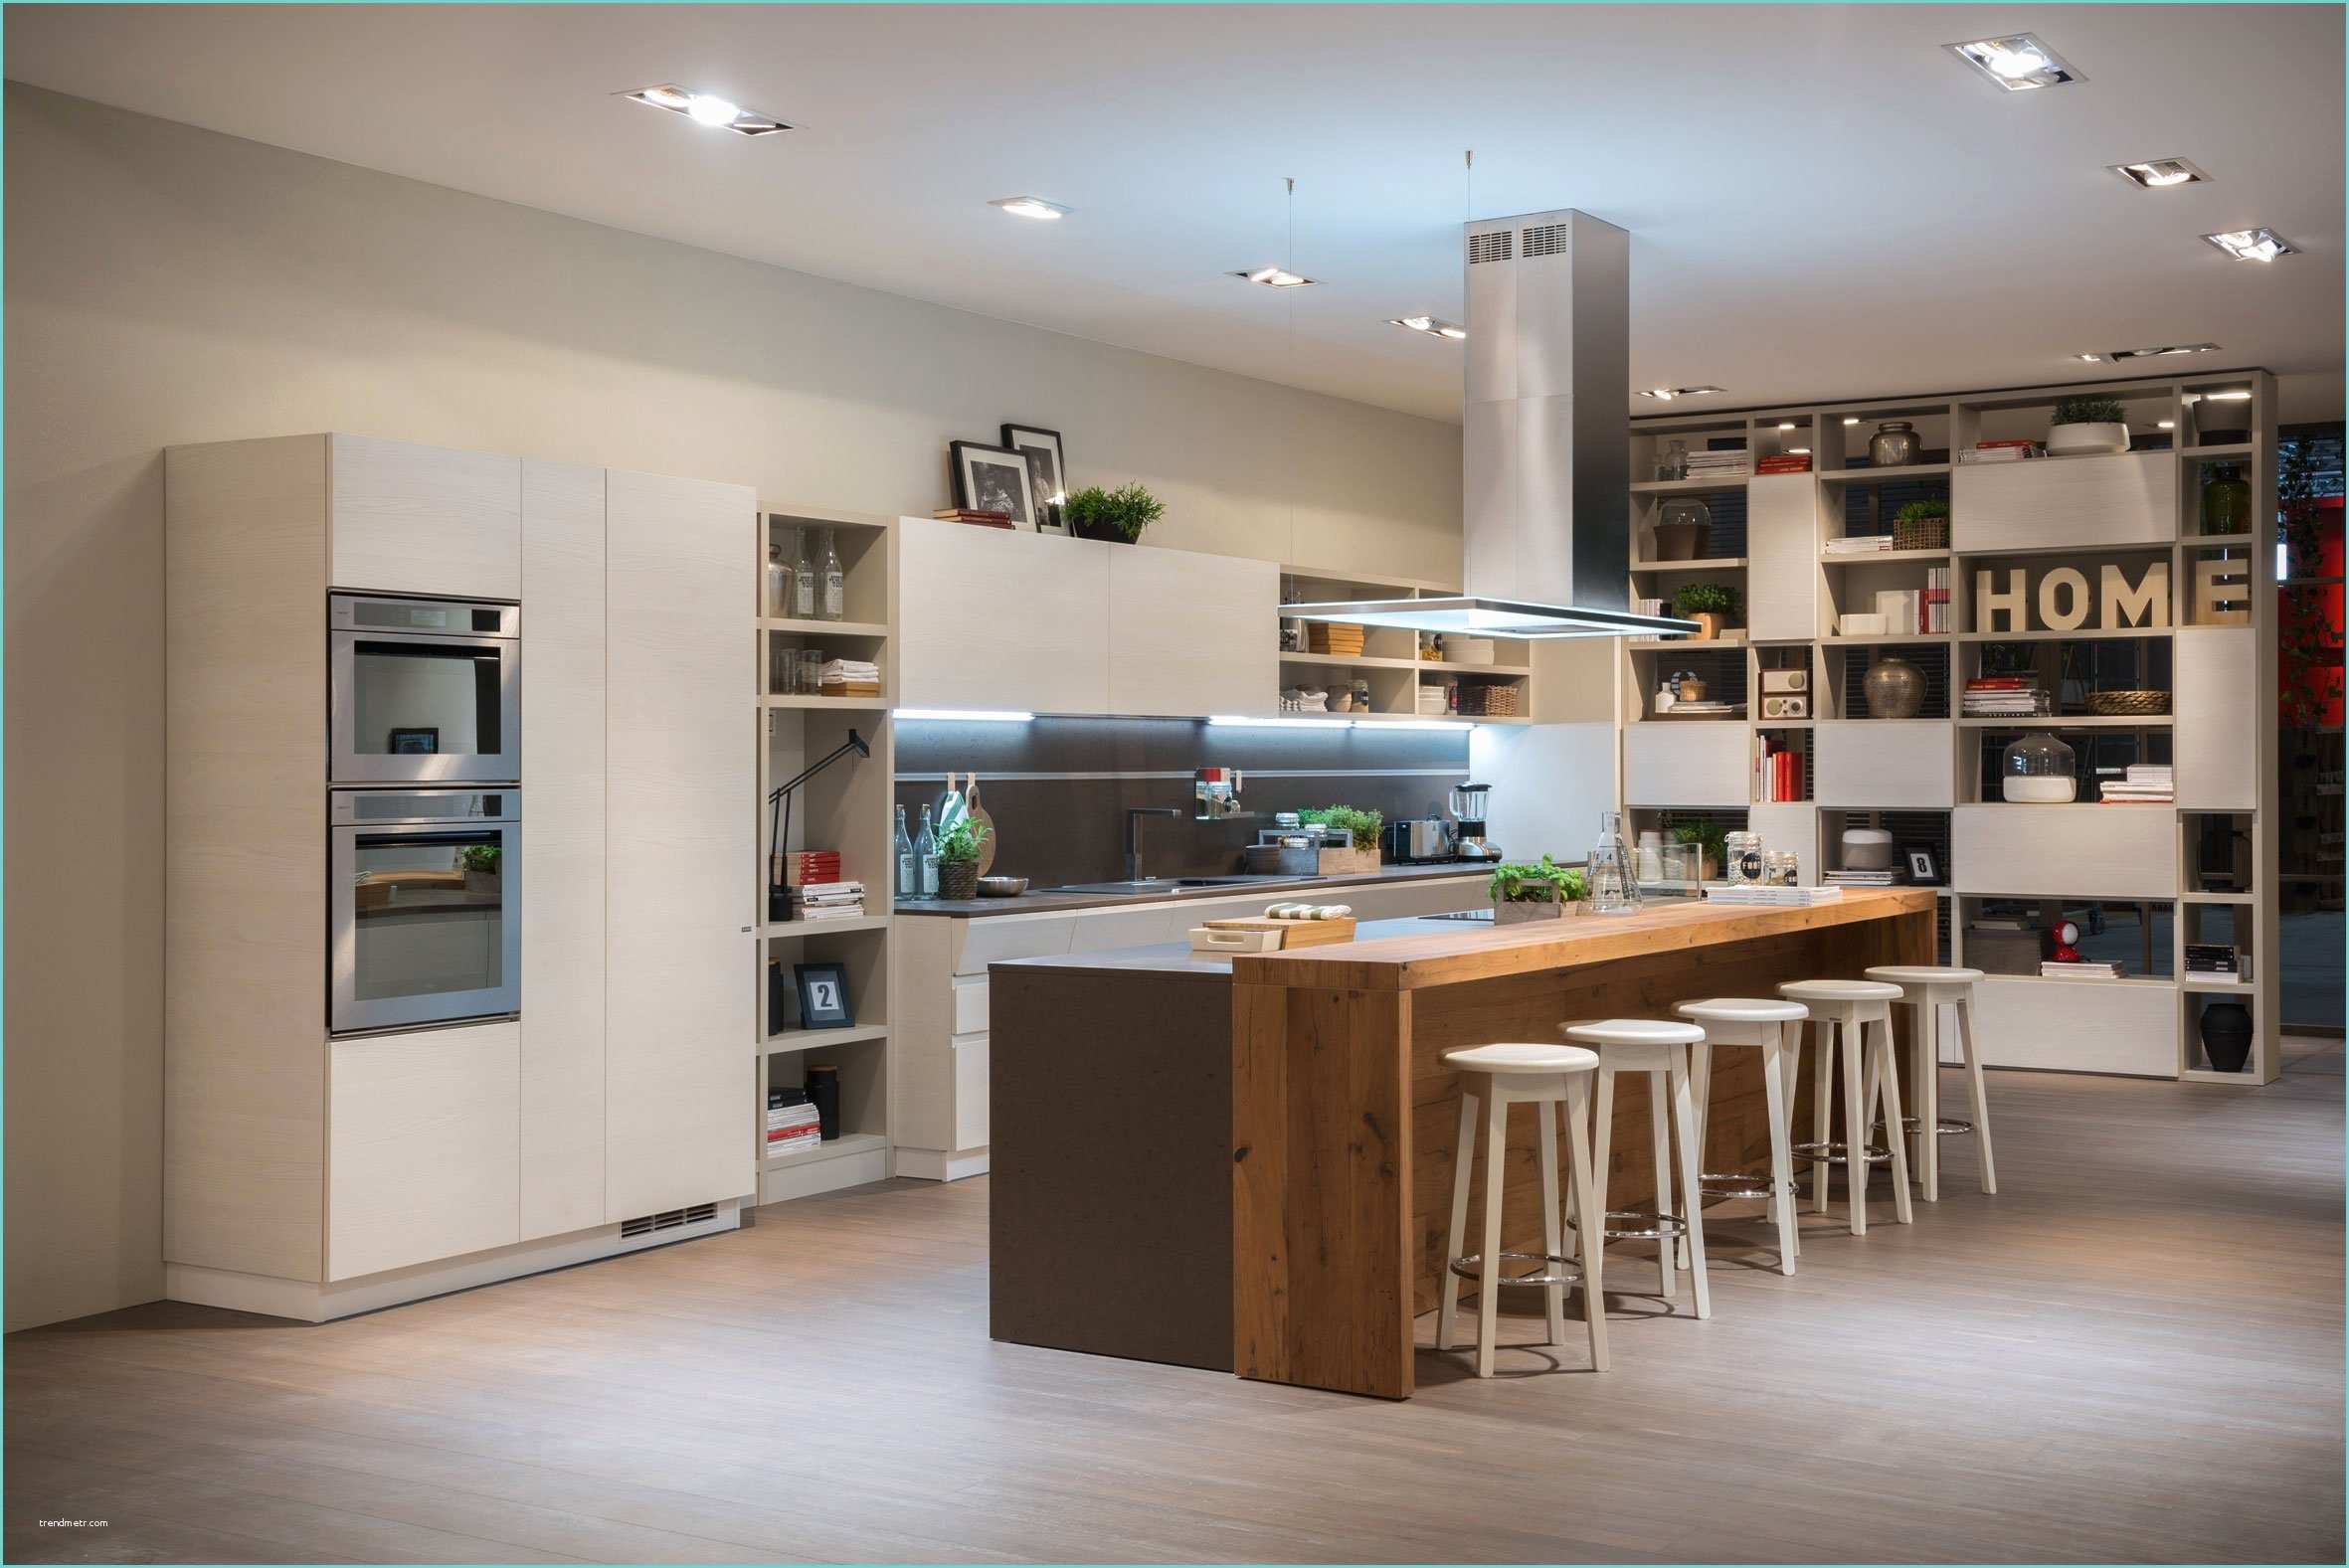 Ikea Cose Per La Casa Cucina E soggiorno Un Unico Ambiente Cose Di Casa